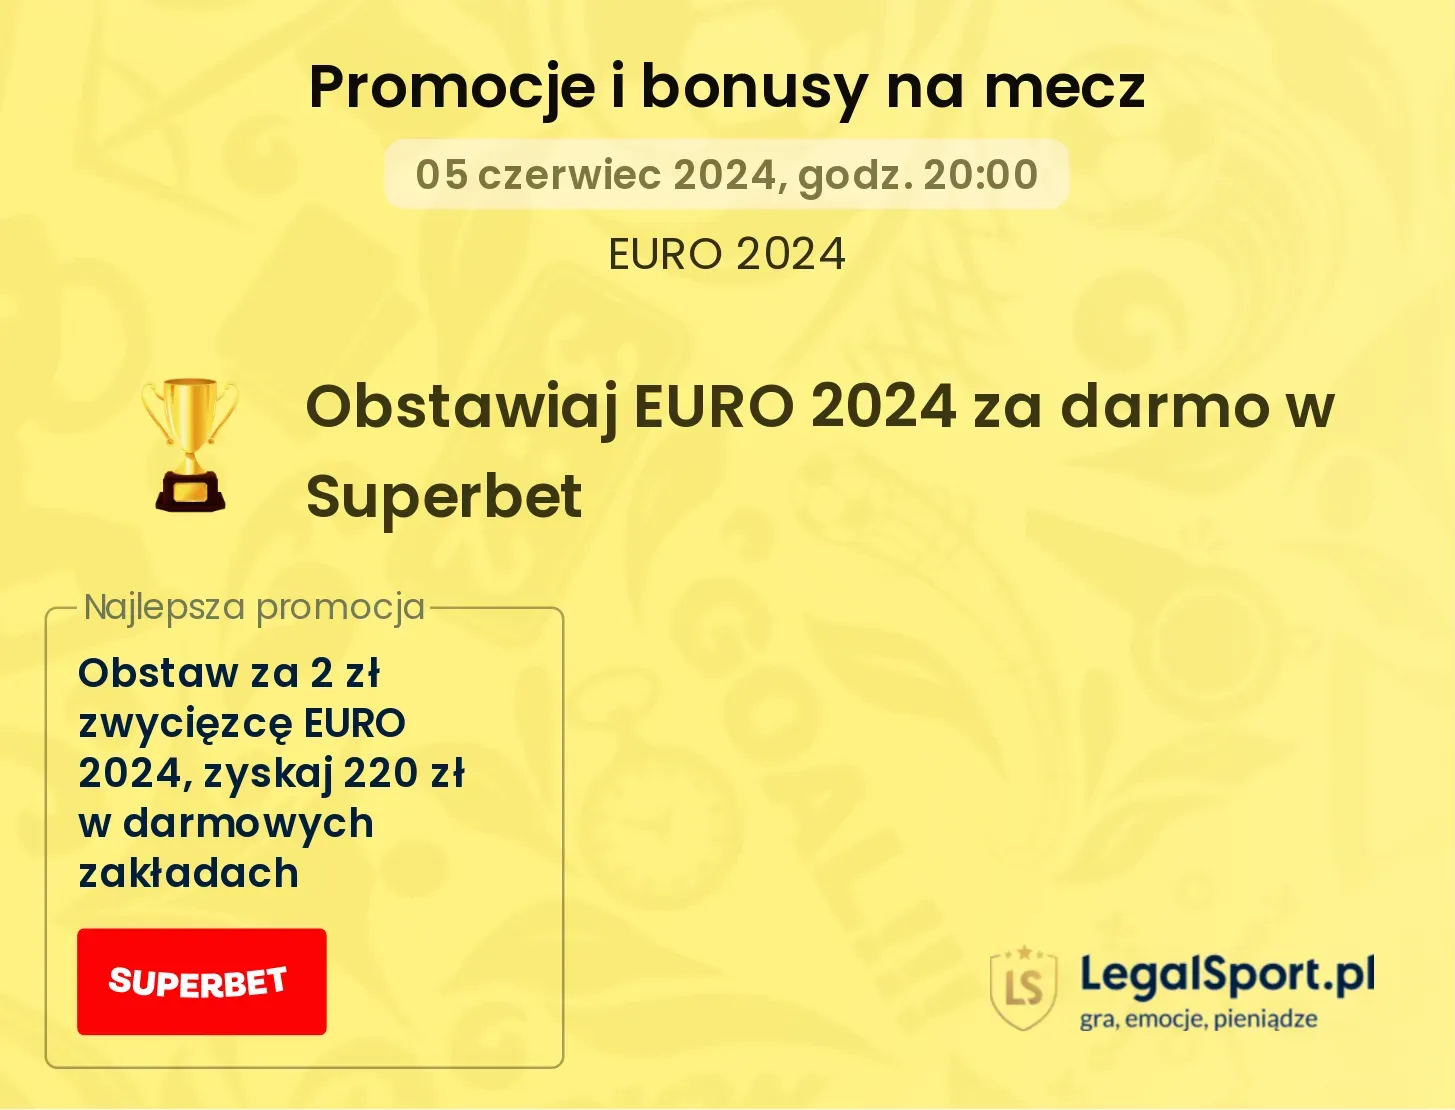 Obstawiaj EURO 2024 za darmo w Superbet promocje bonusy na mecz